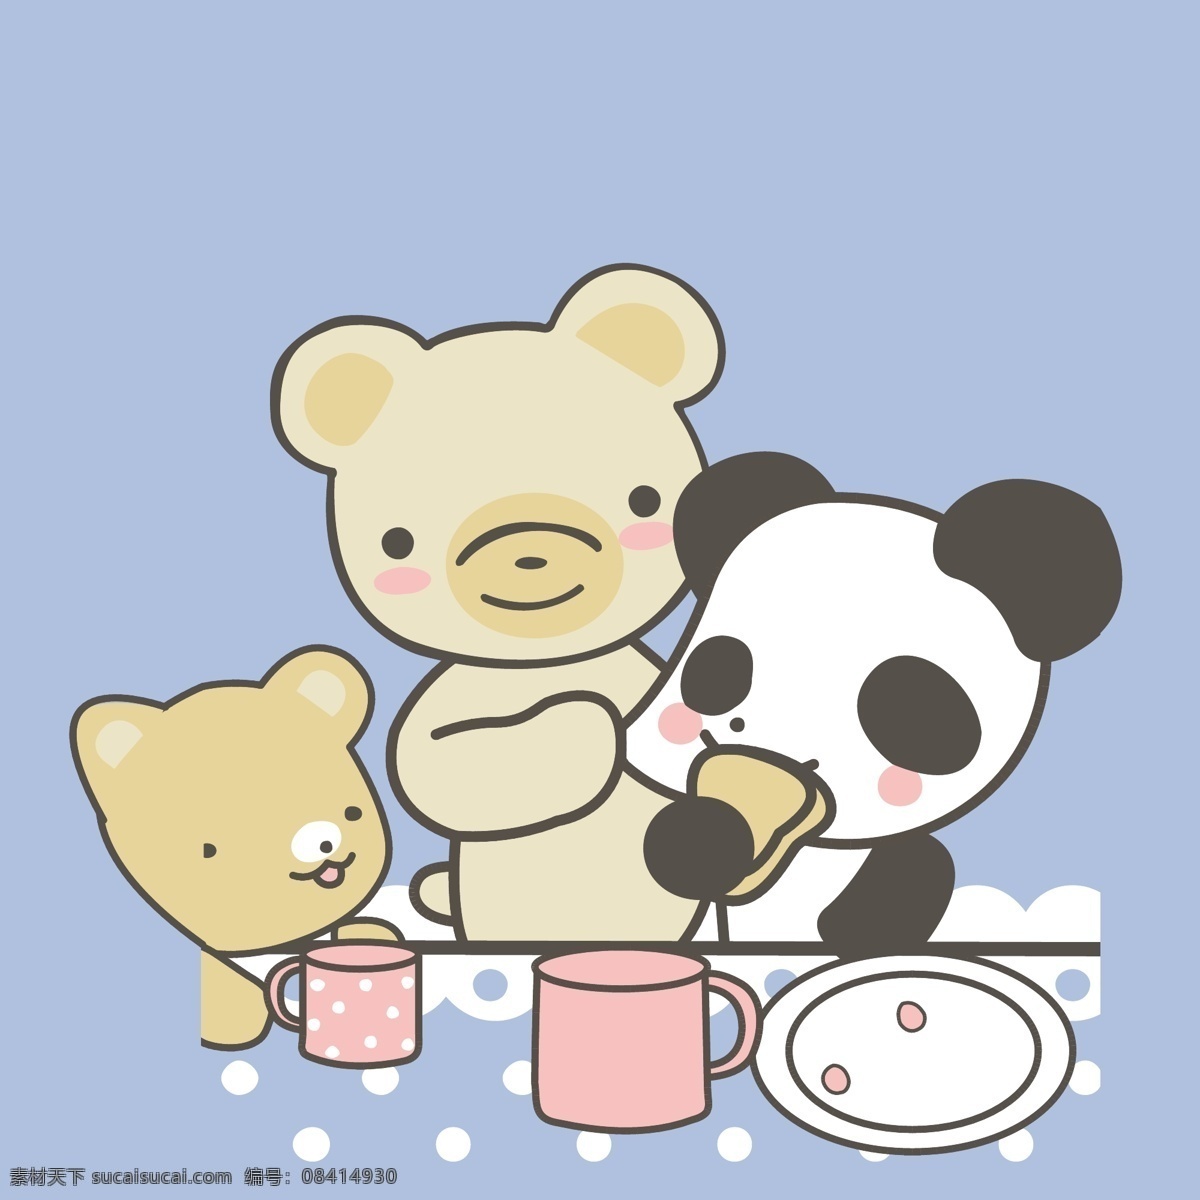 免费 熊猫 熊 动物 可爱卡通 印花矢量图